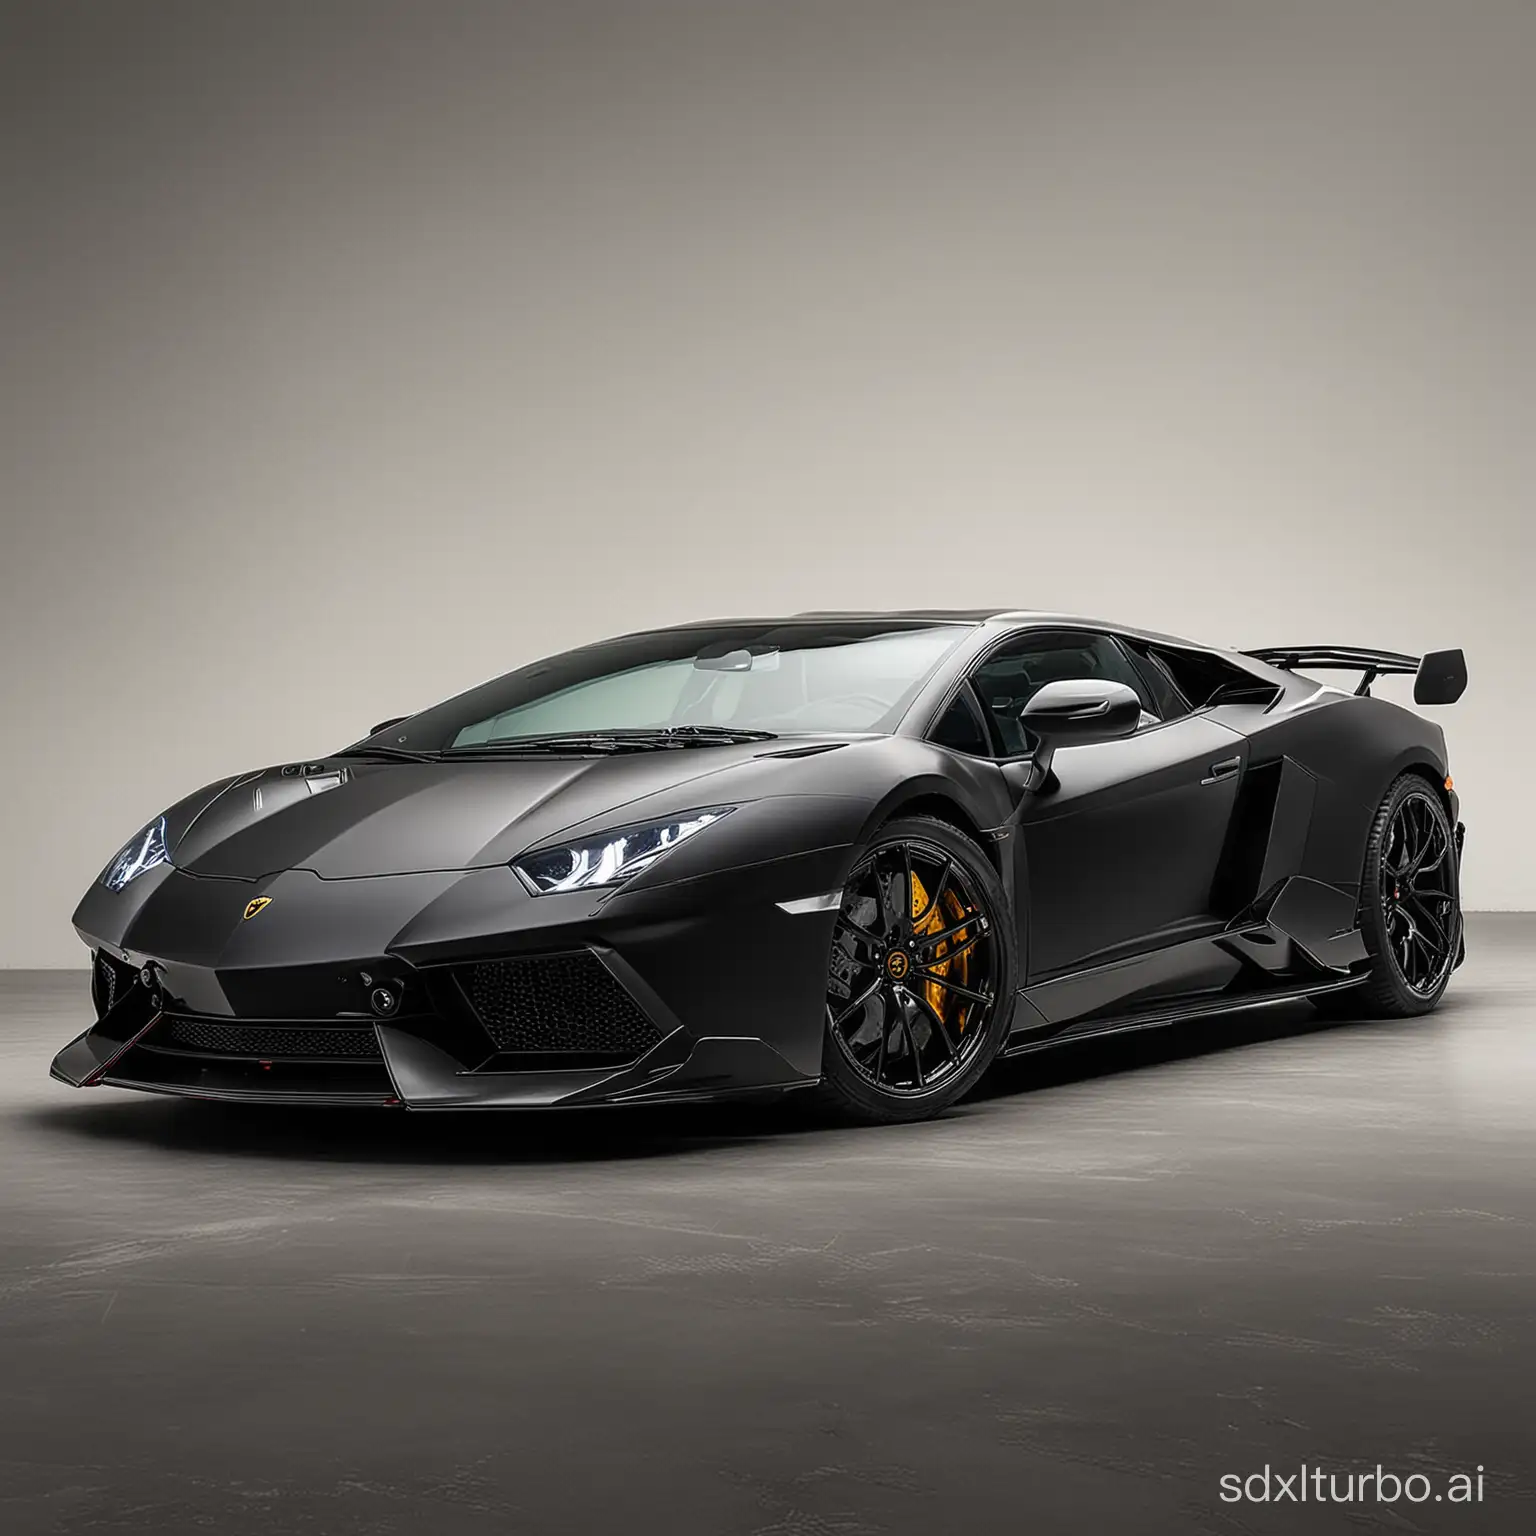 Luxurious-Lamborghini-Sports-Car-in-Urban-Setting